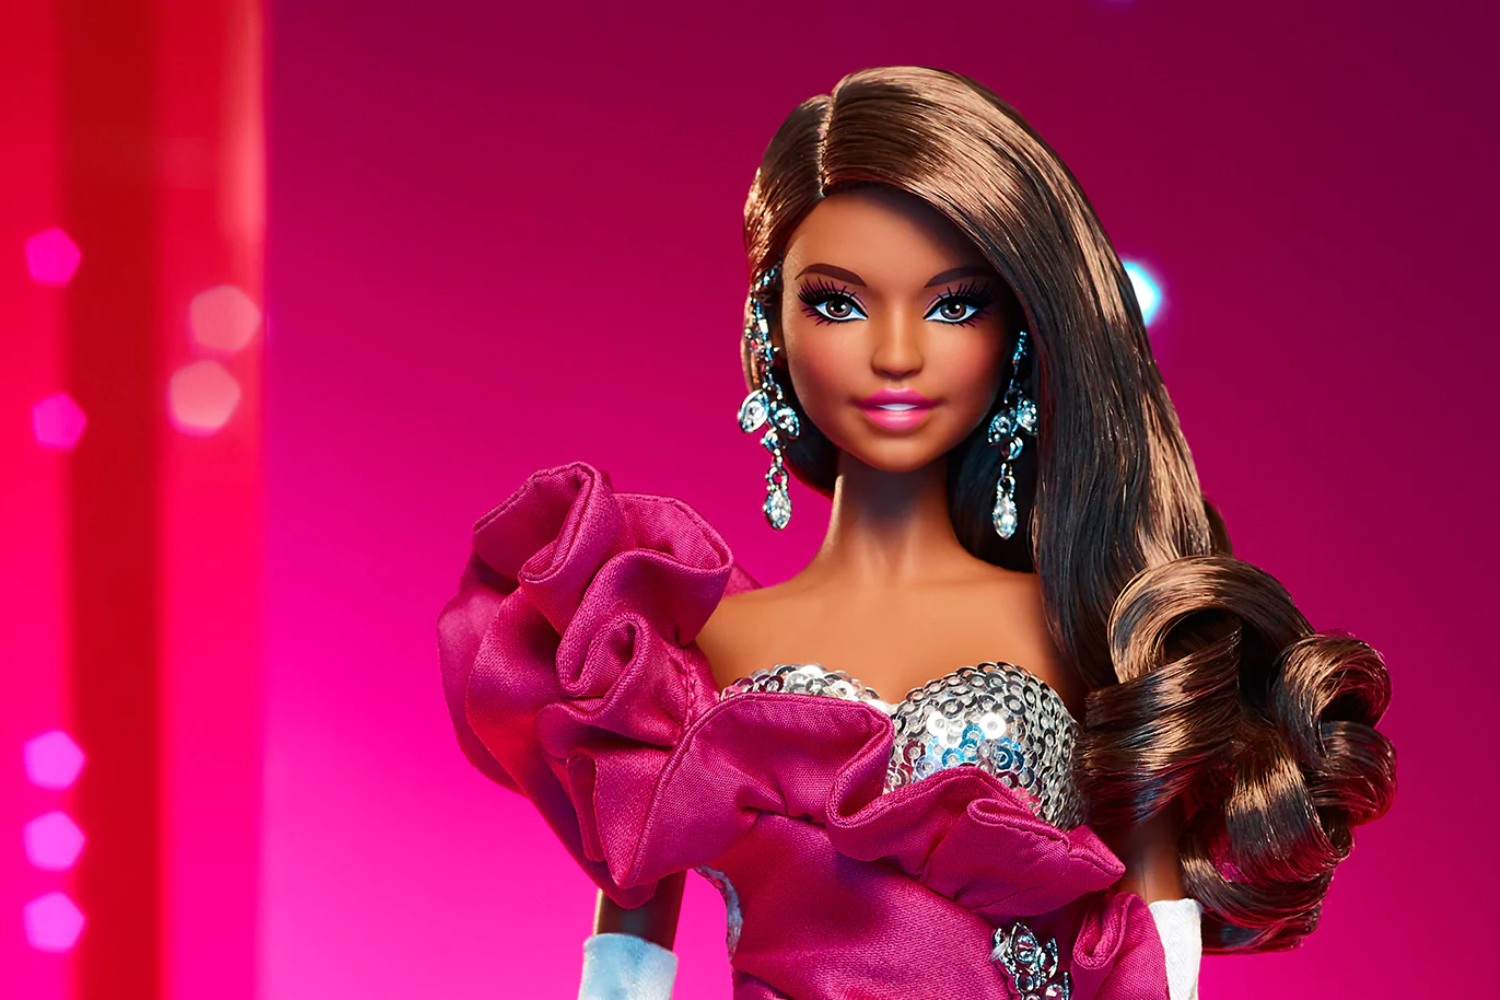 Afinal, o filme da Barbie é bom? A Forbes já viu e te conta - Forbes